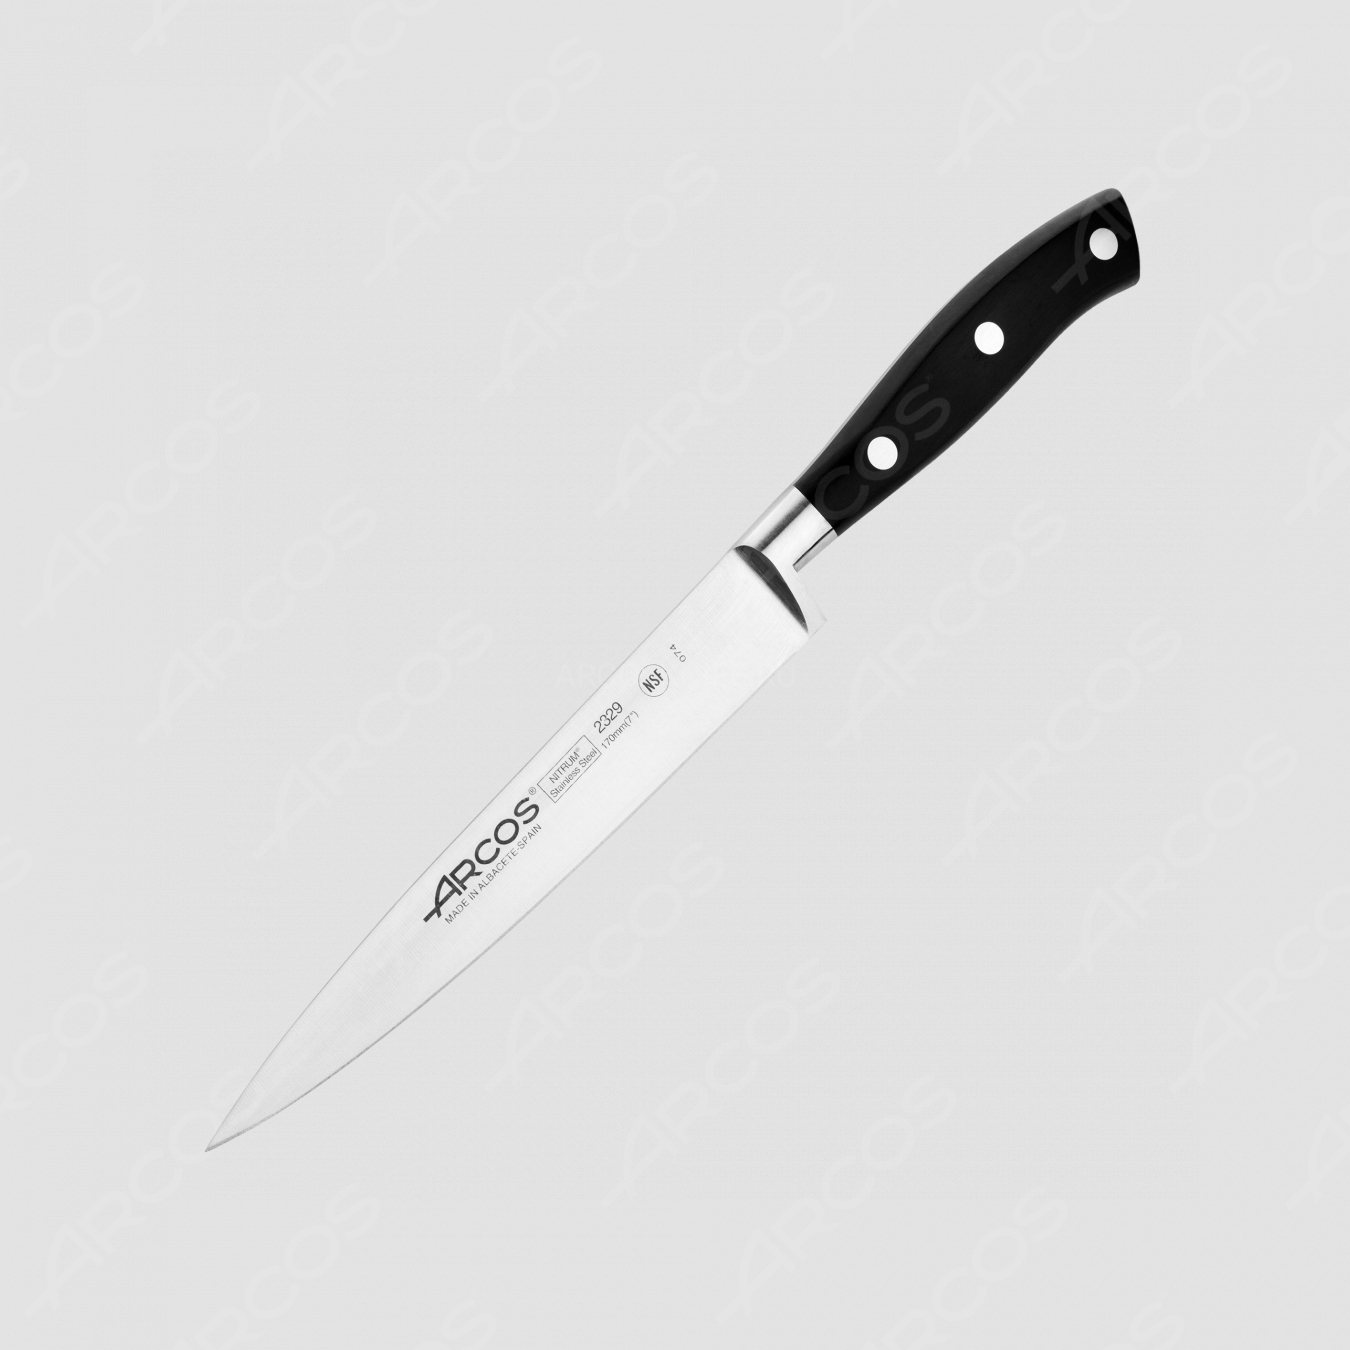 Нож кухонный филейный 17 см, серия Riviera, ARCOS, Испания